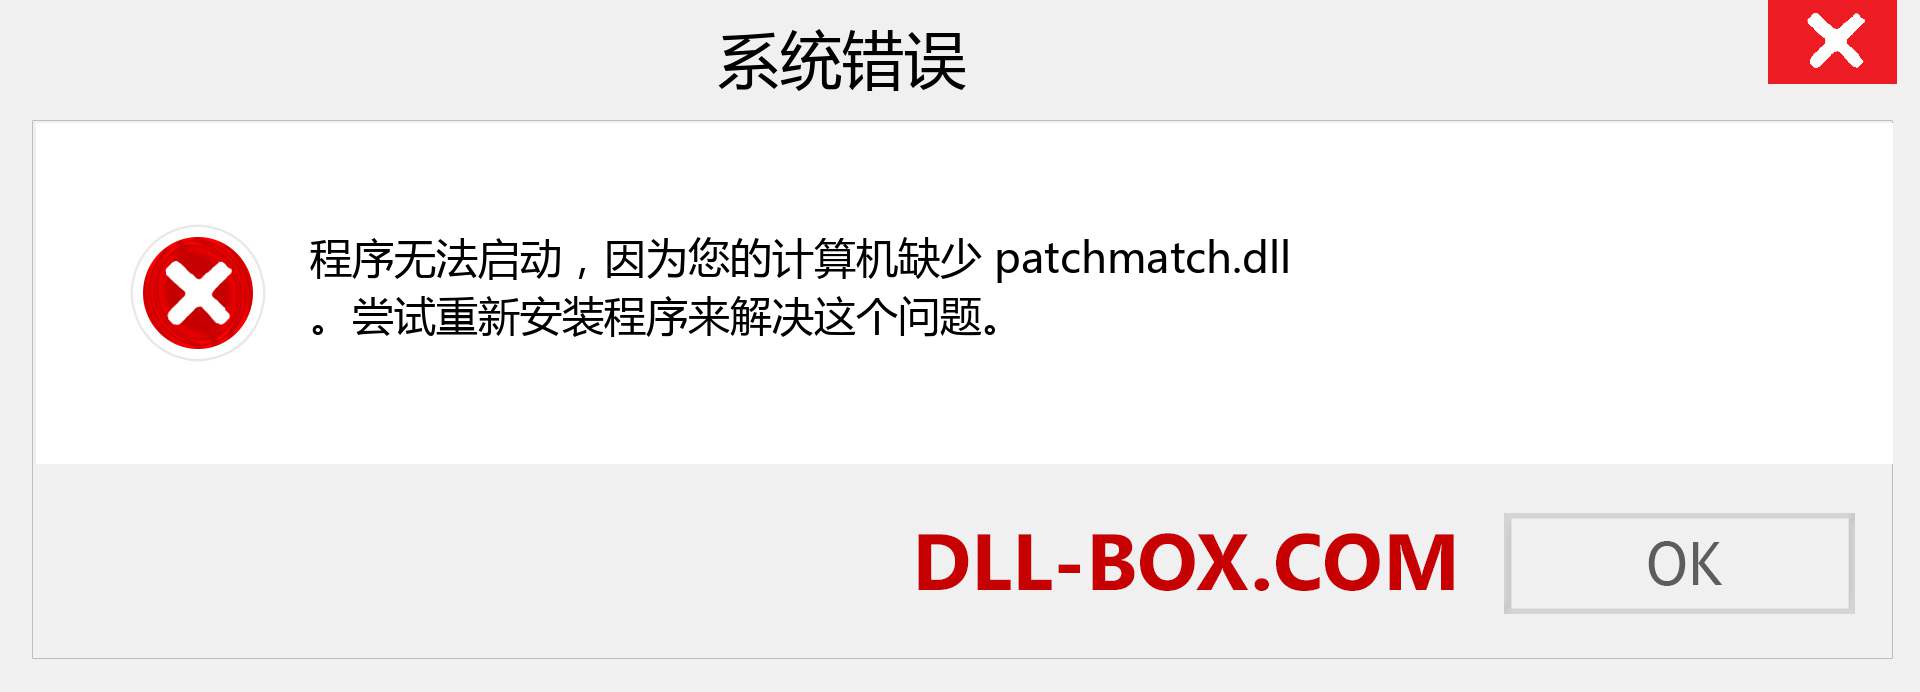 patchmatch.dll 文件丢失？。 适用于 Windows 7、8、10 的下载 - 修复 Windows、照片、图像上的 patchmatch dll 丢失错误